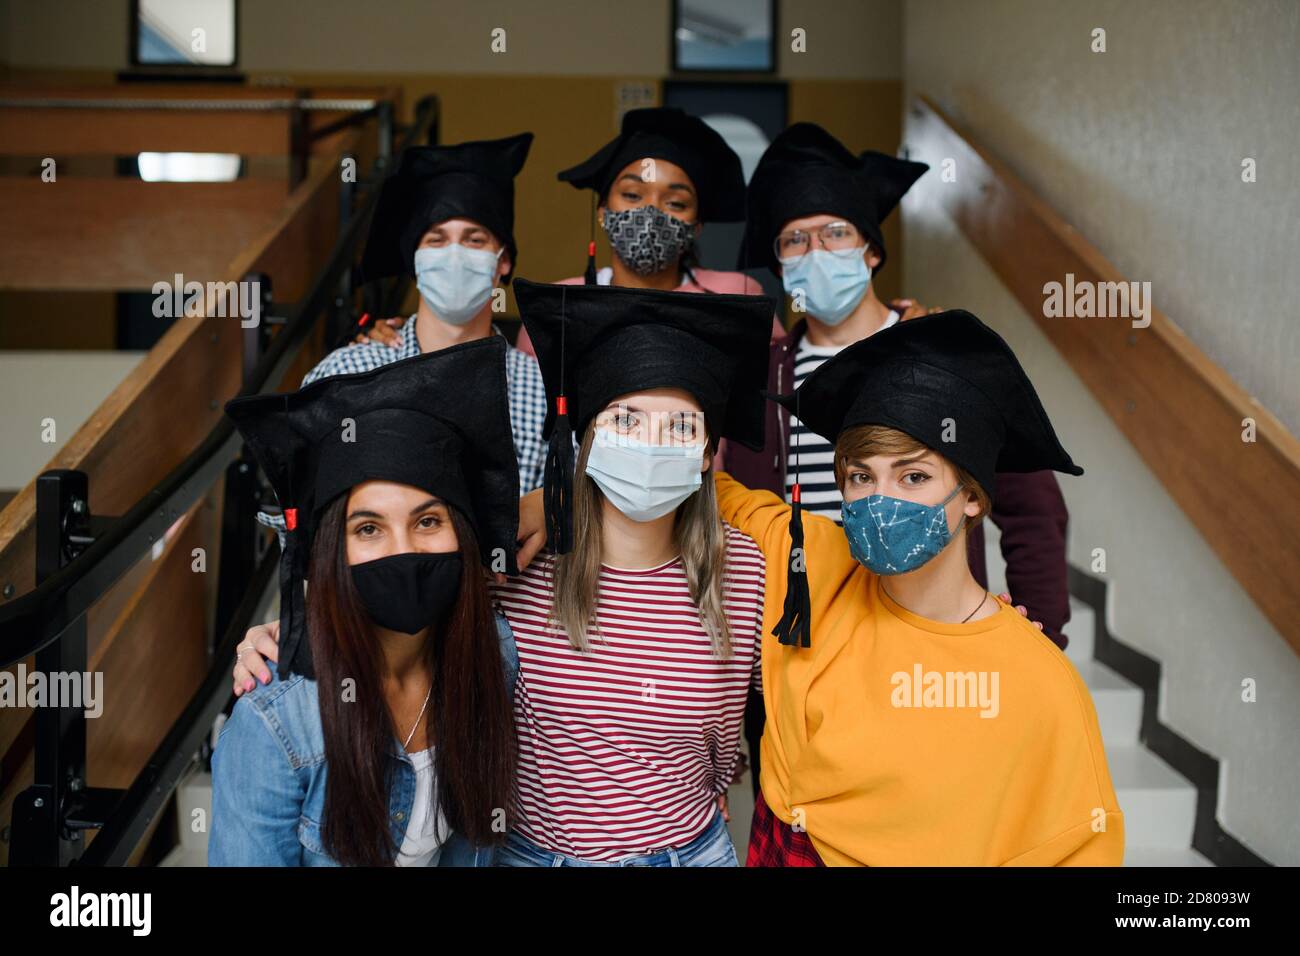 Estudiantes jóvenes con máscaras faciales y tapas de graduación en la universidad o la universidad, concepto de coronavirus. Foto de stock